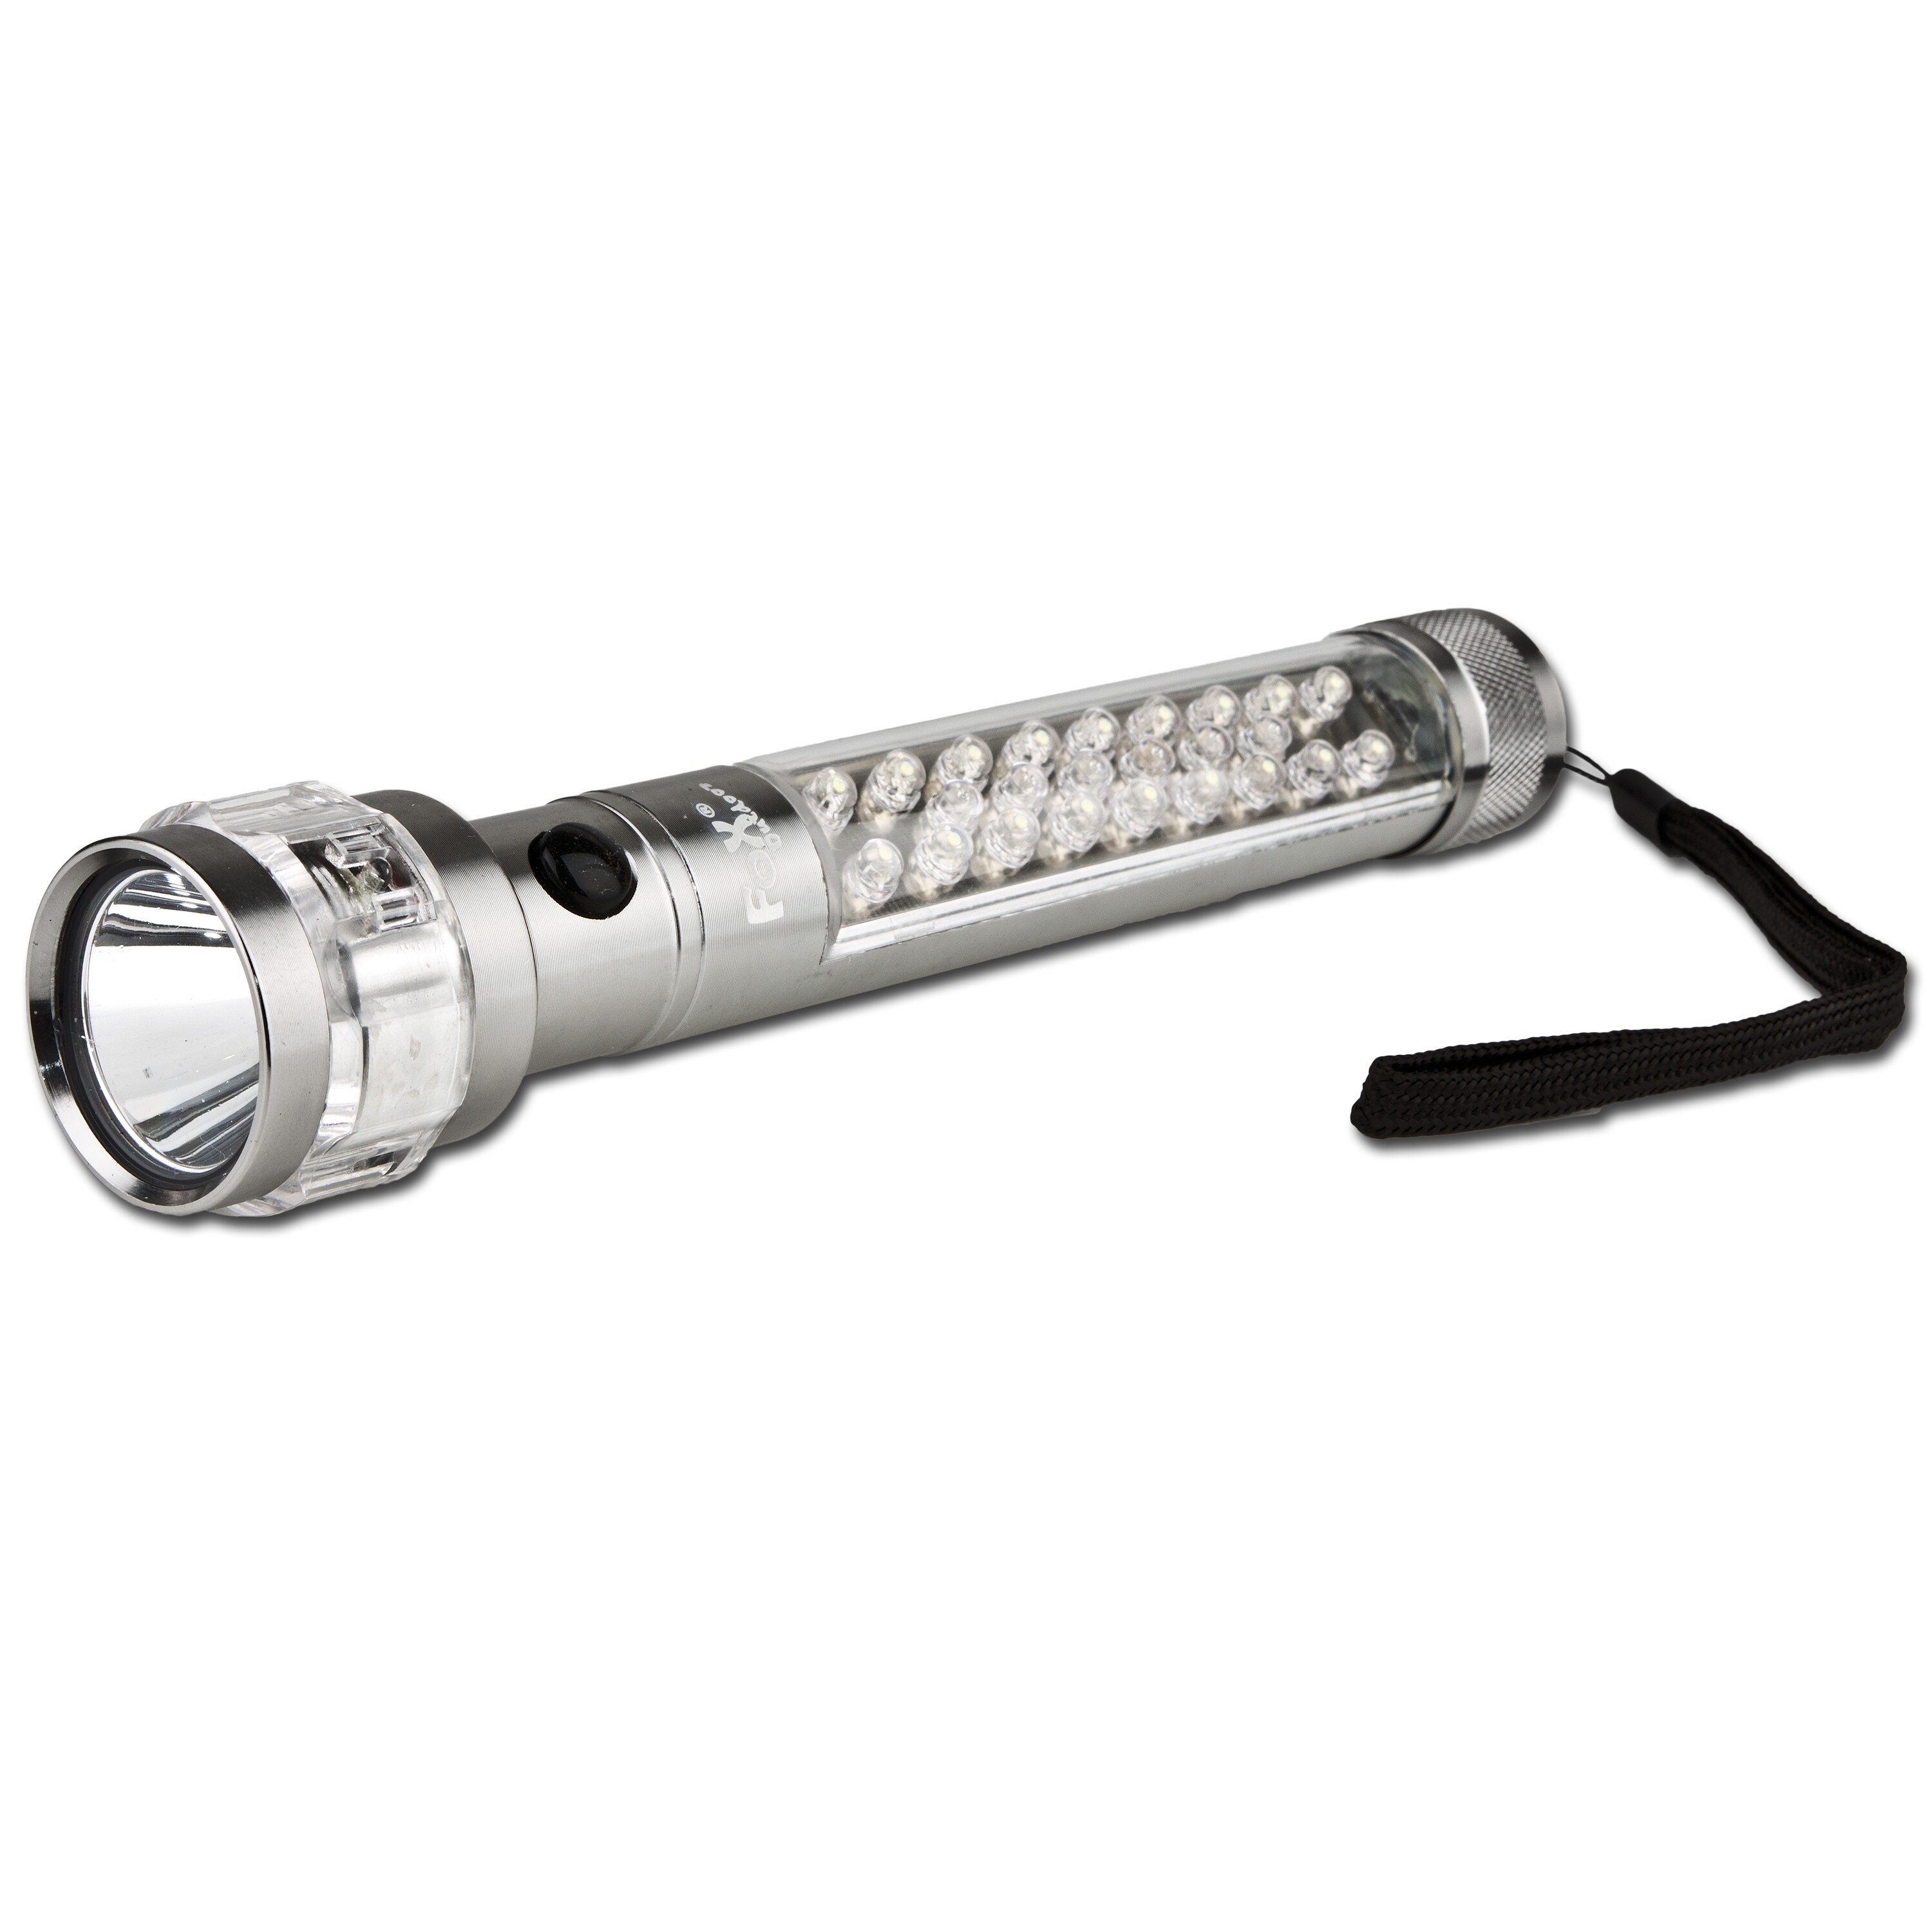 Fox Outdoor Stablampe 5 Watt LED Taschenlampe Einsatzlampe Alu-Gehäuse bis 150 m